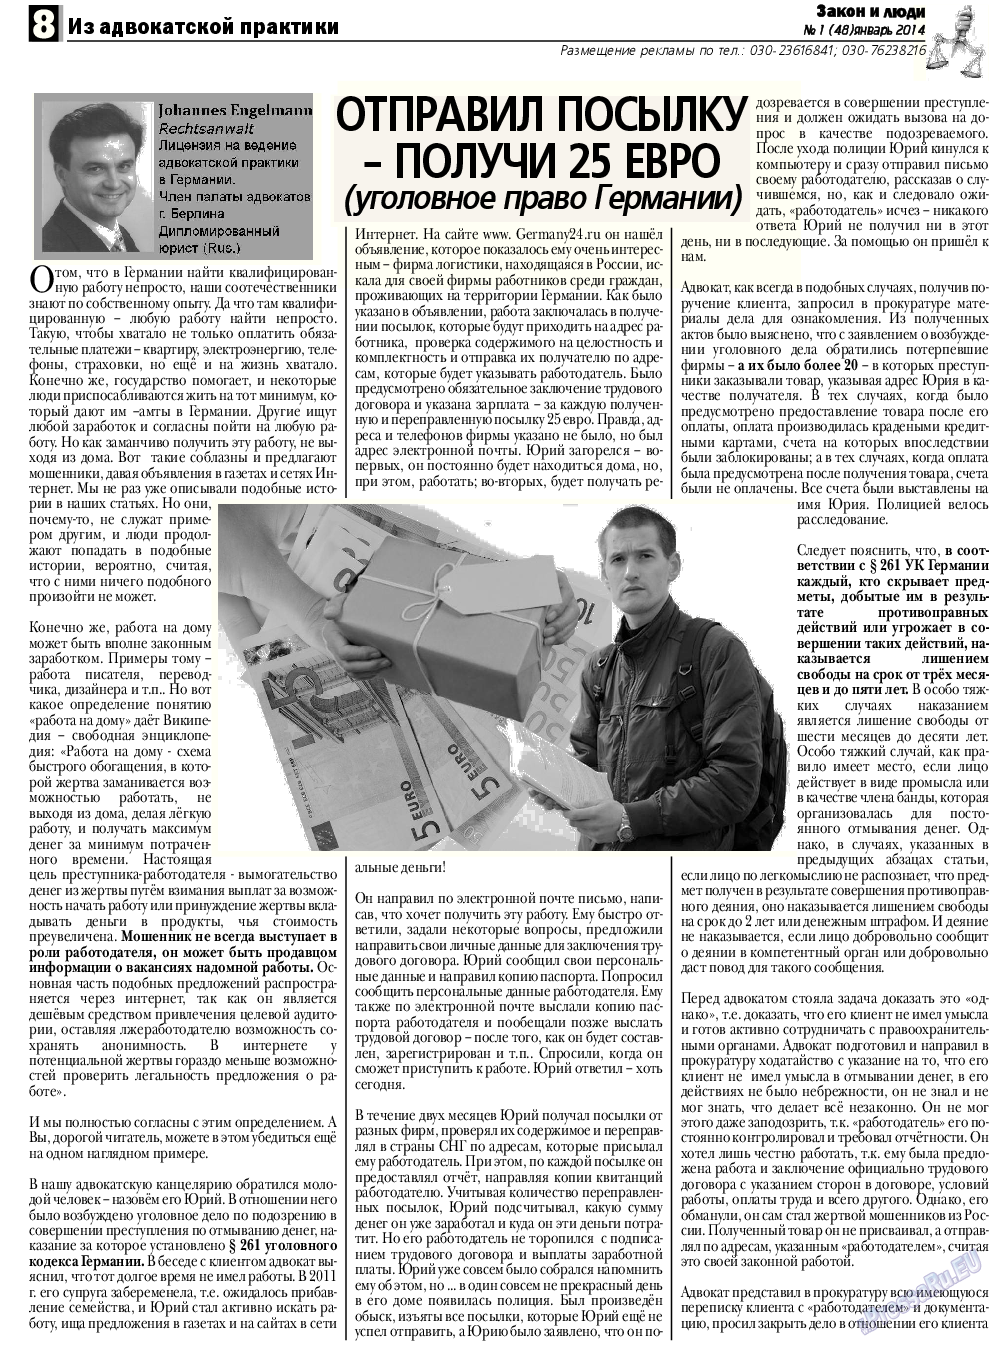 Закон и люди, газета. 2014 №1 стр.8